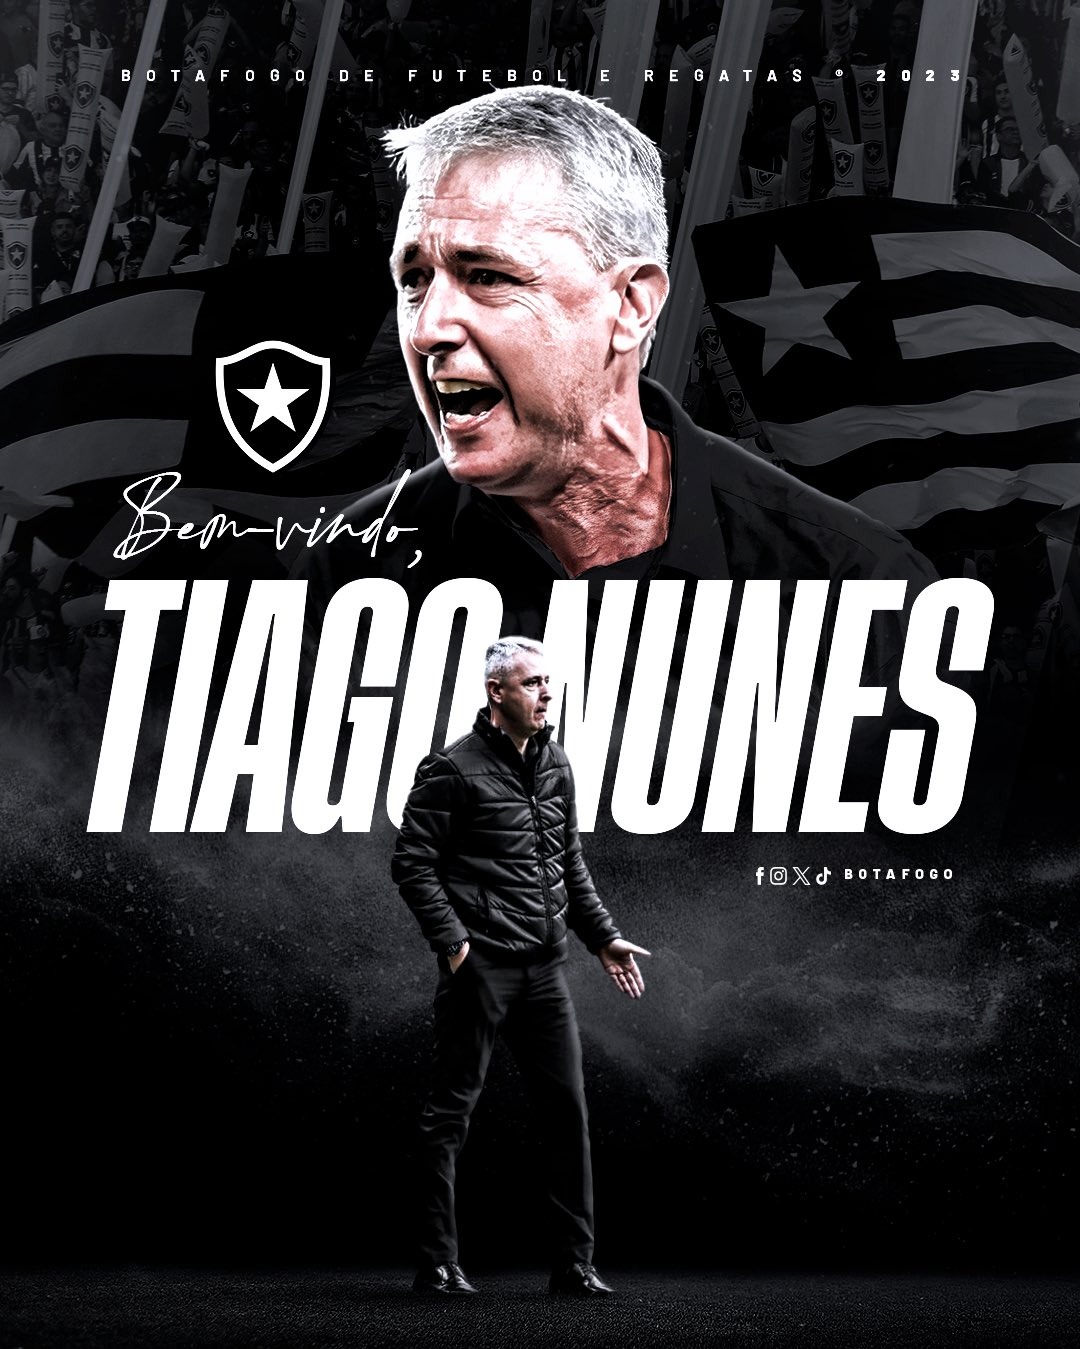 Tiago Nunes es el nuevo entrenador de Botafogo. | Fuente: @Botafogo